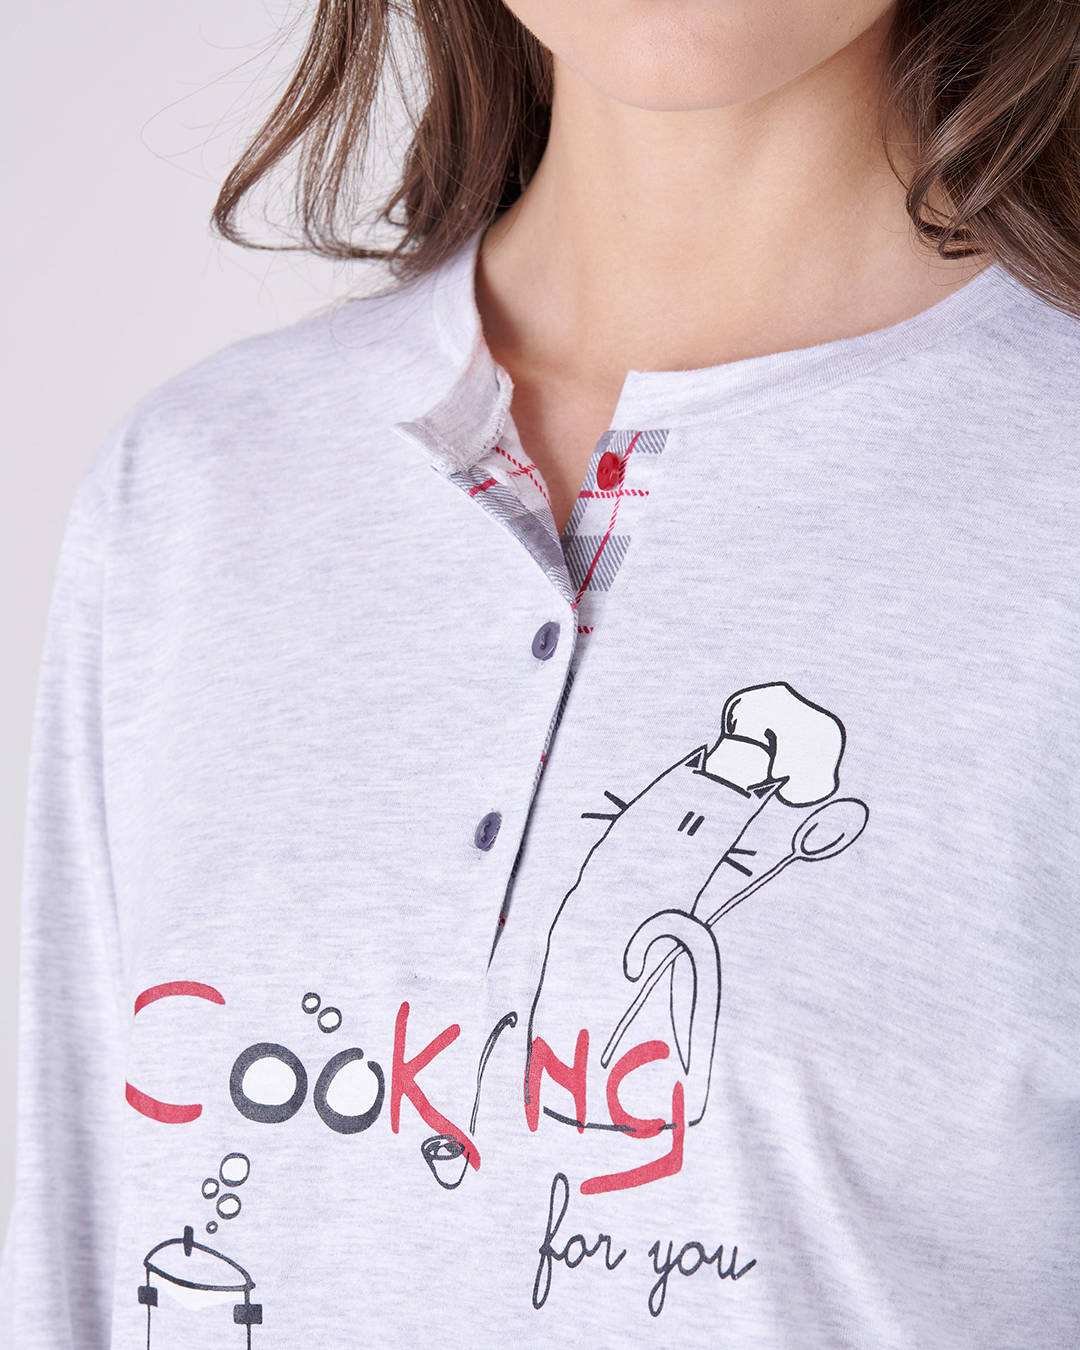 Dettaglio disegno sulla maglietta del pigiama lungo da donna "COOK"